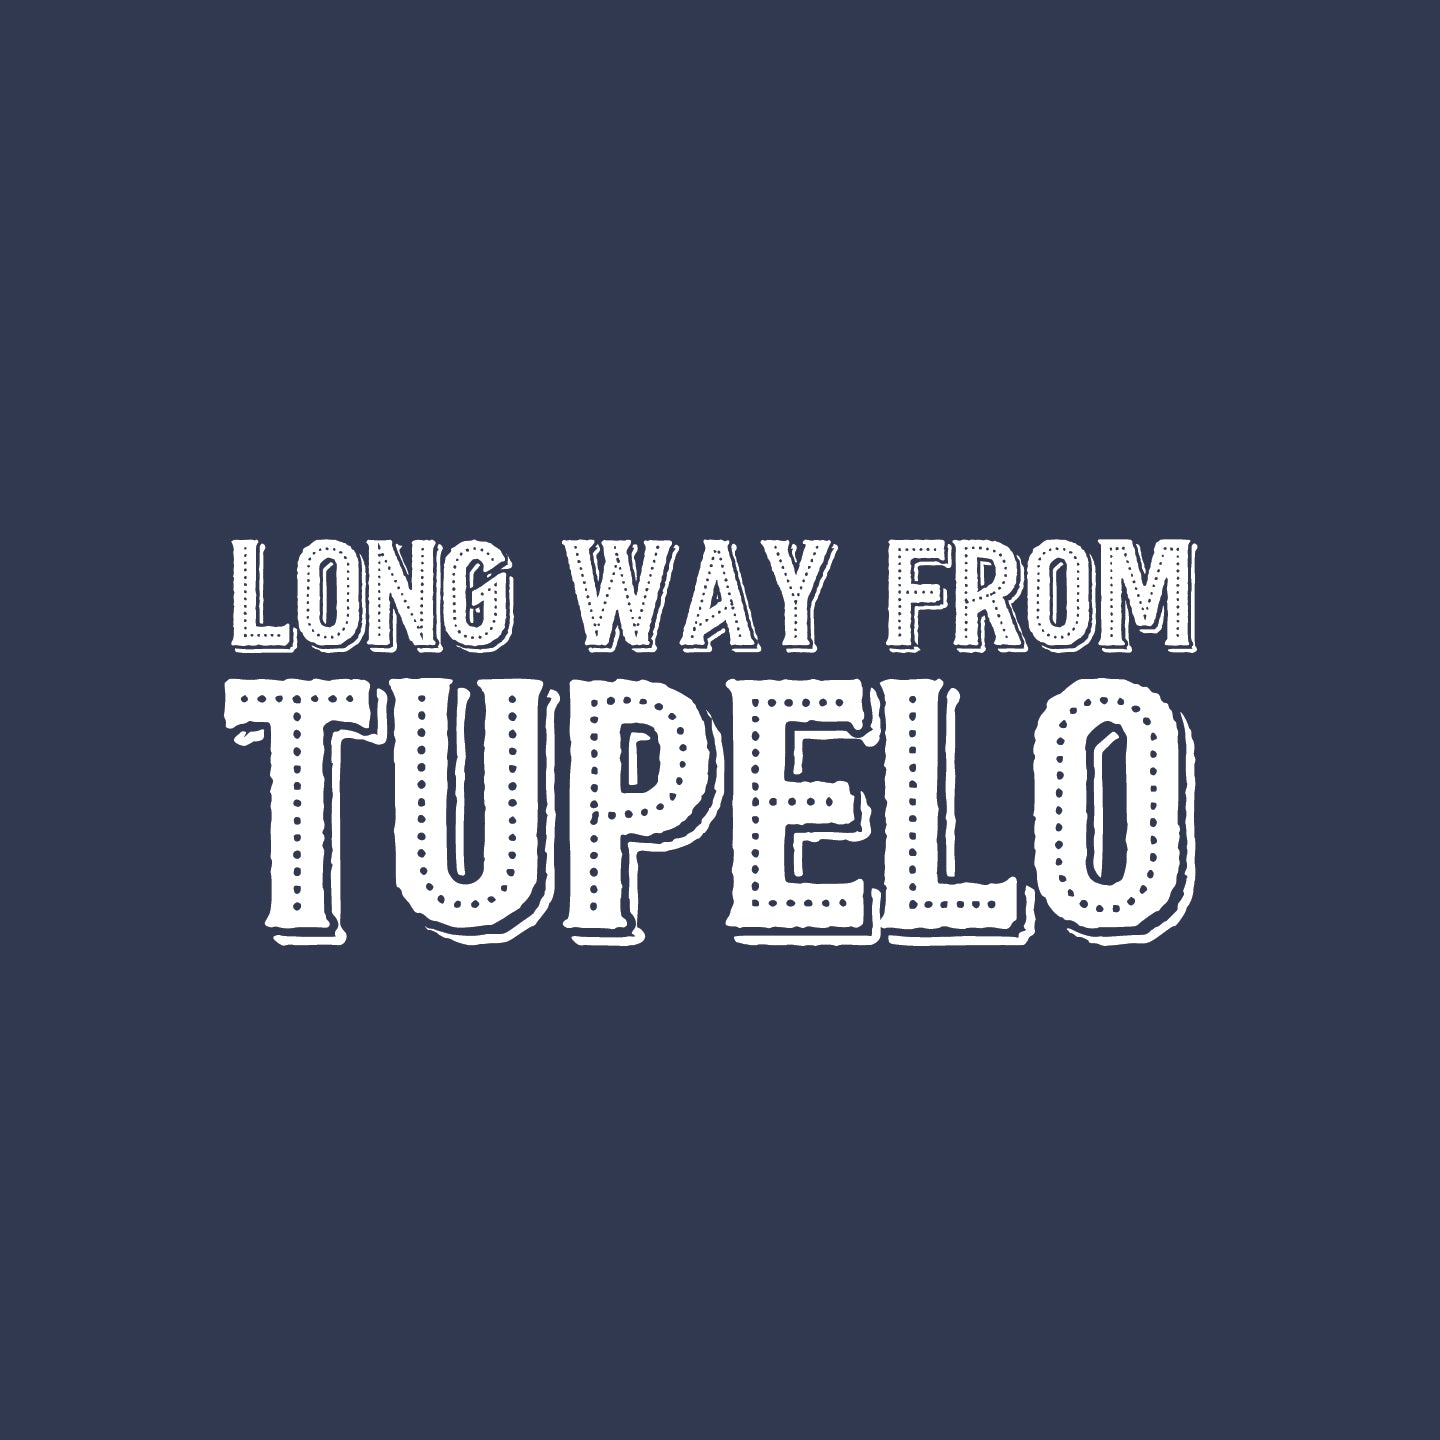 Long way from Tupelo